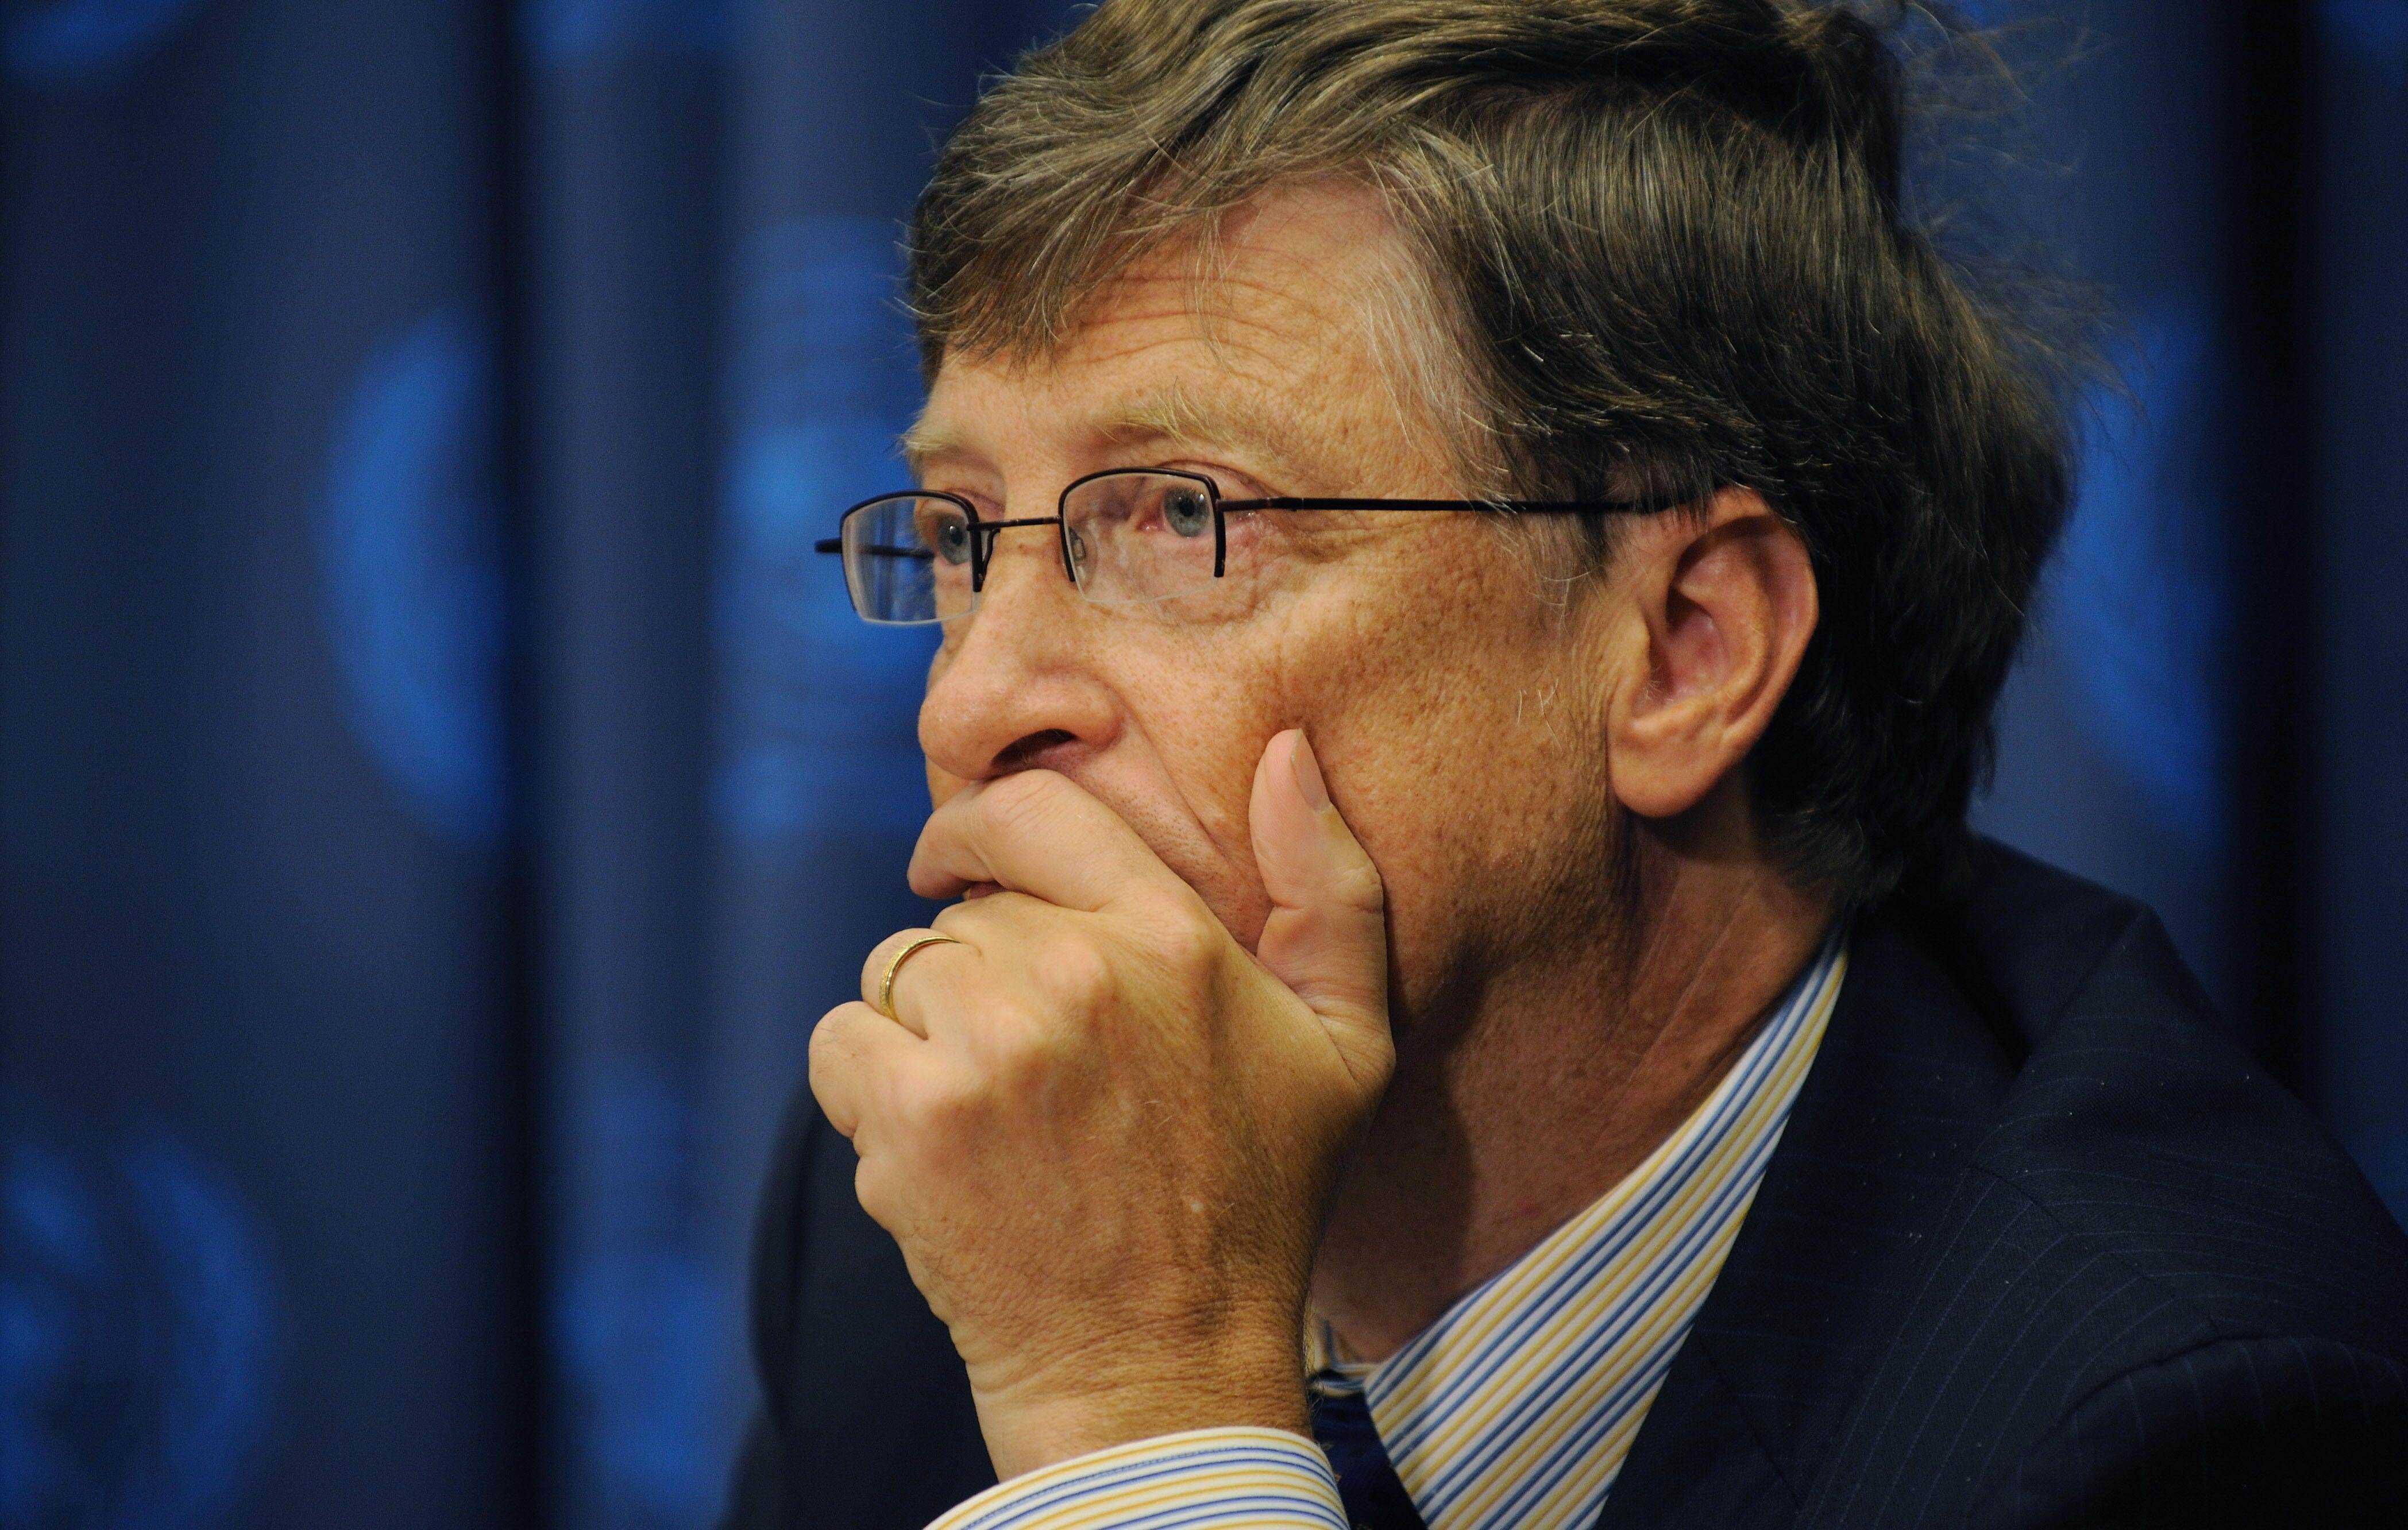 Gates nimmt als Vorsitzender der Bill & Melinda Gates Foundation an einer globalen Gesundheitskonferenz teil, die von den Vereinten Nationen am 25. September 2008 in New York veranstaltet wurde.